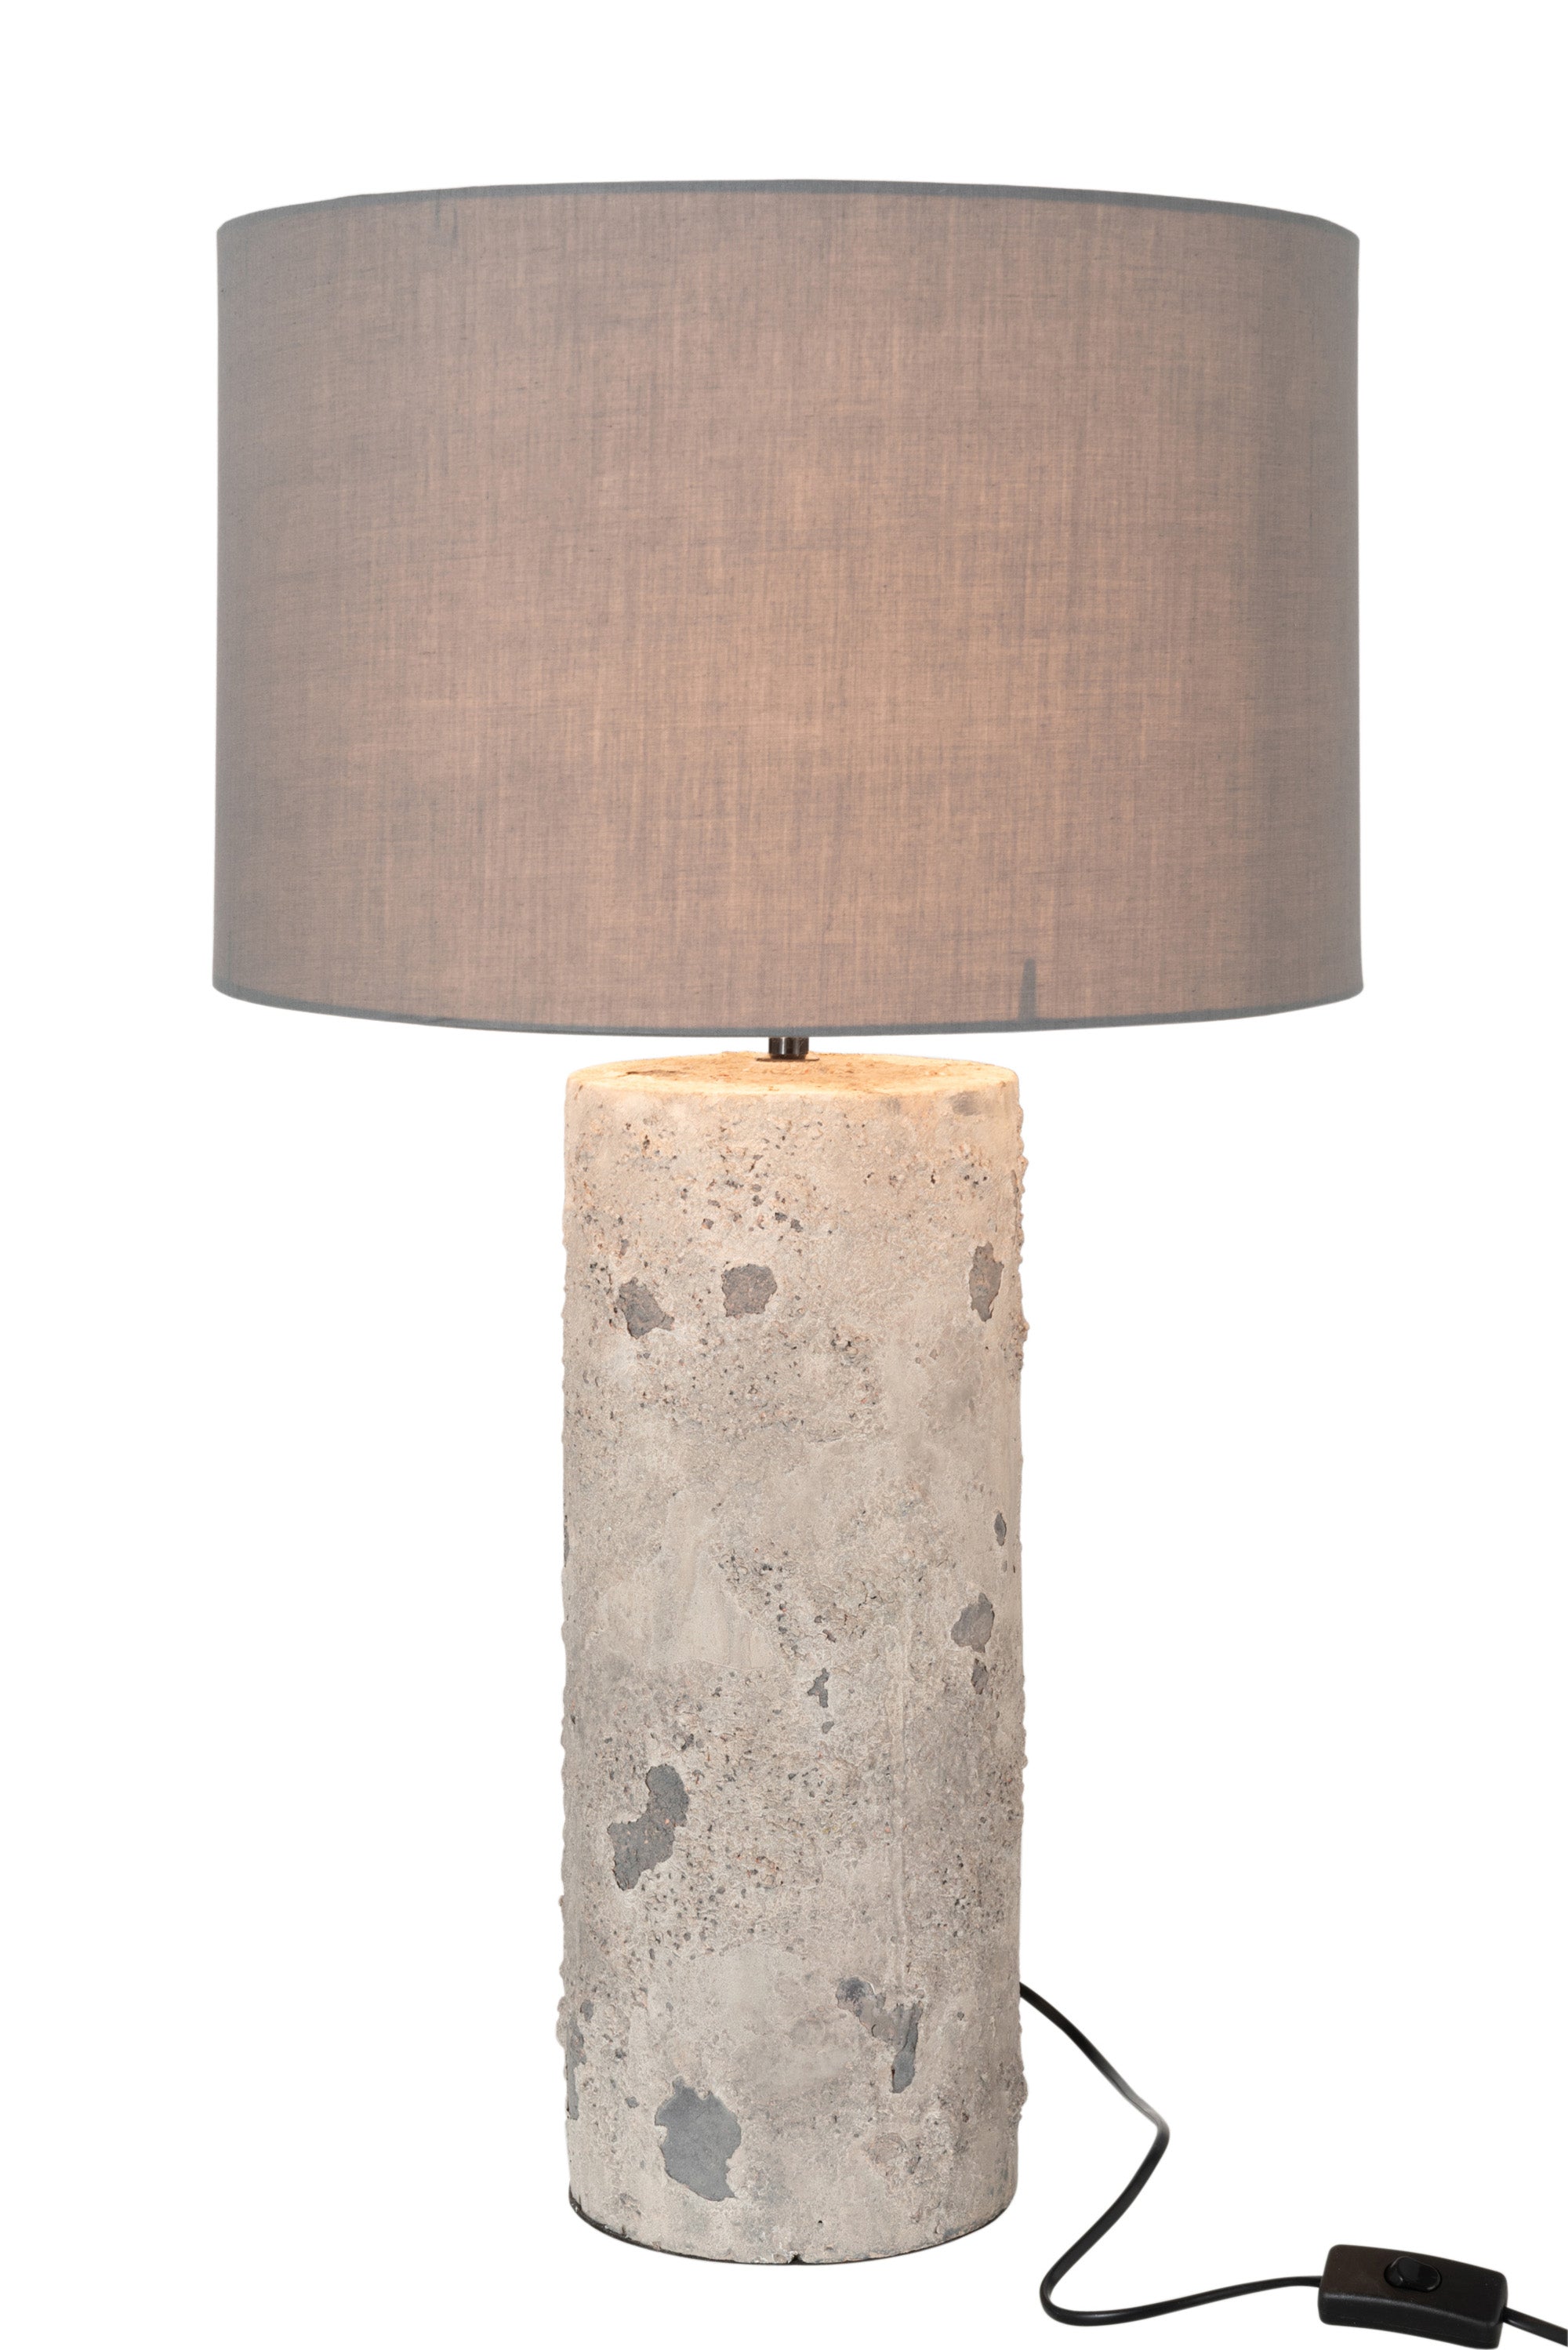 Tischlampe, deren Sockel aus einem hohen Zylinder aus groben Beton besteht, darüber ein breiter, runder Lampenschirm in grau.